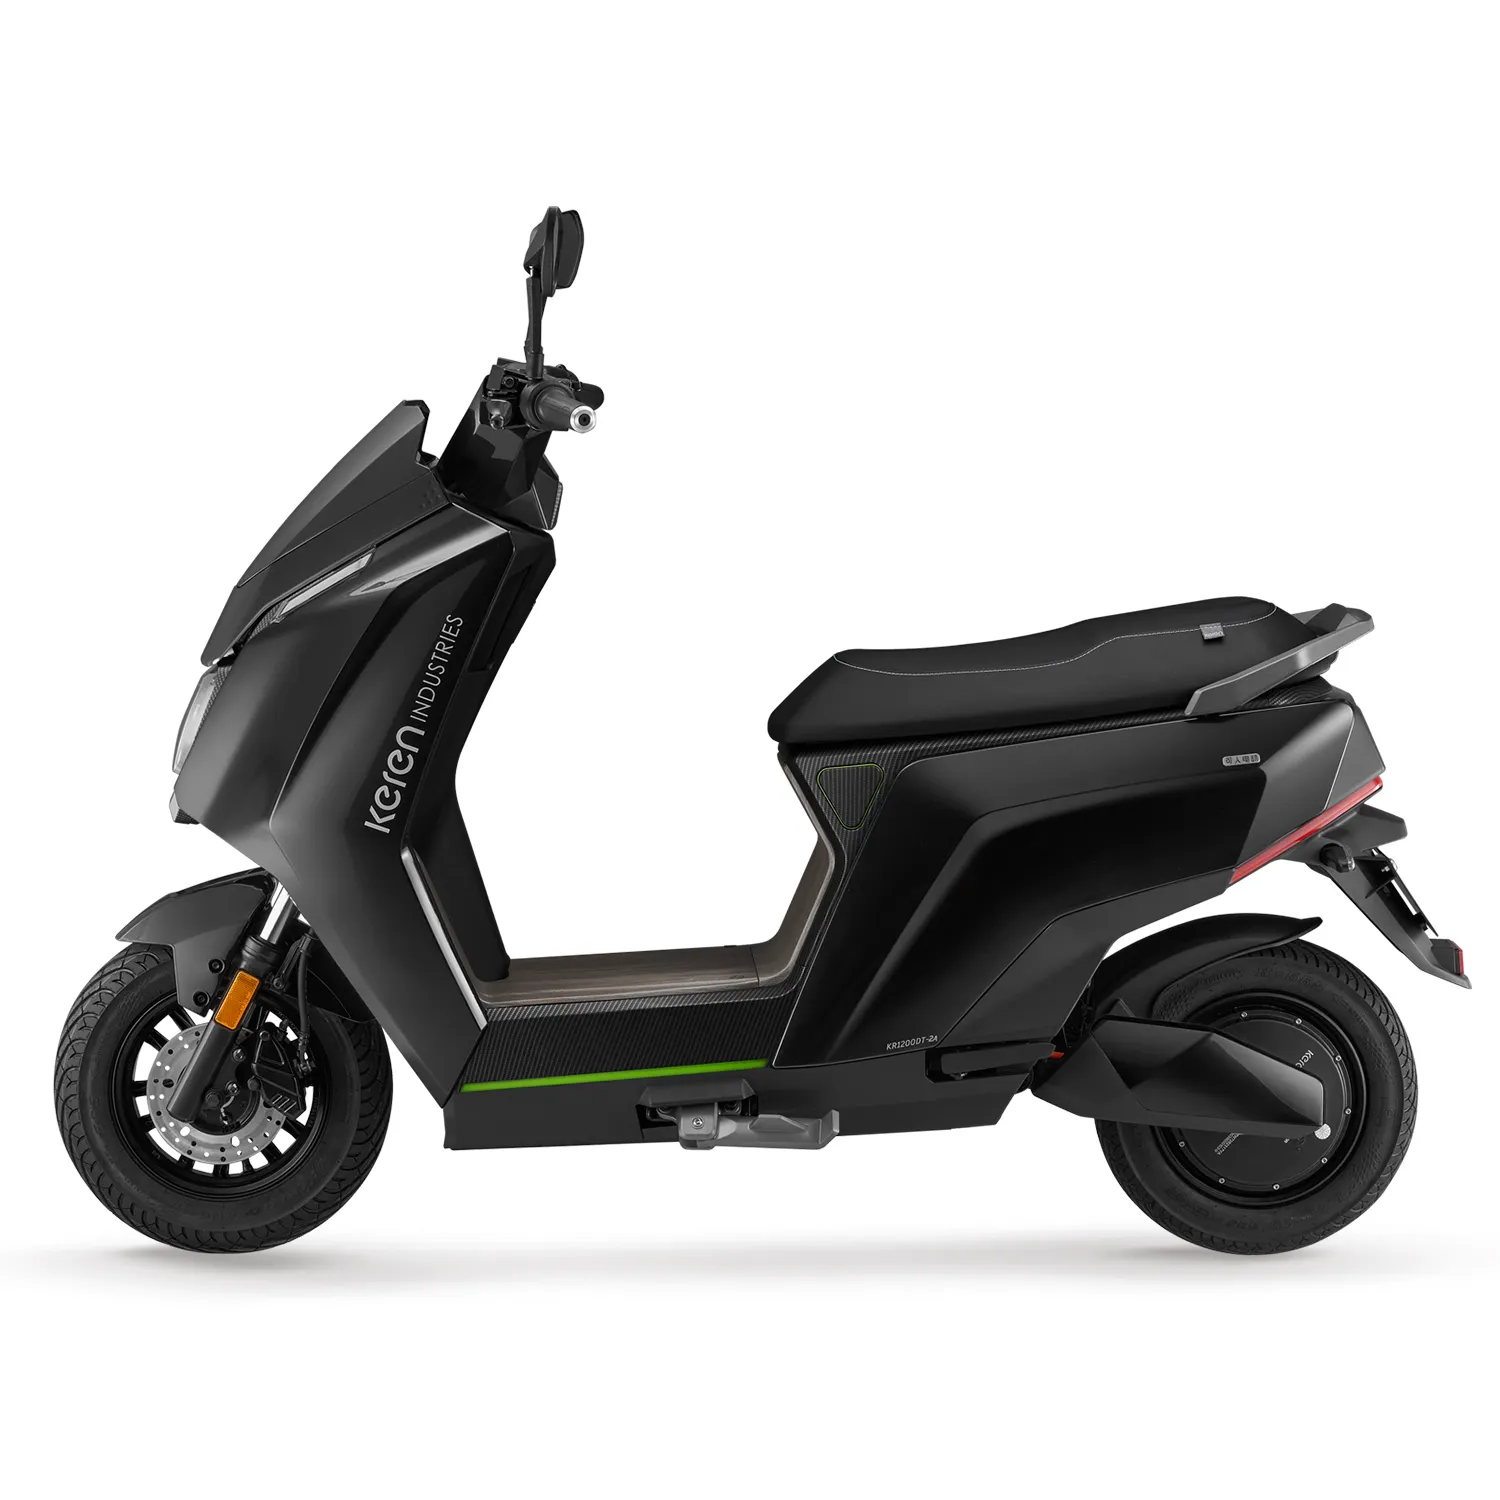 Mejor calidad buen precio al por mayor 72V Scooter Eléctrico motocicleta para adultos